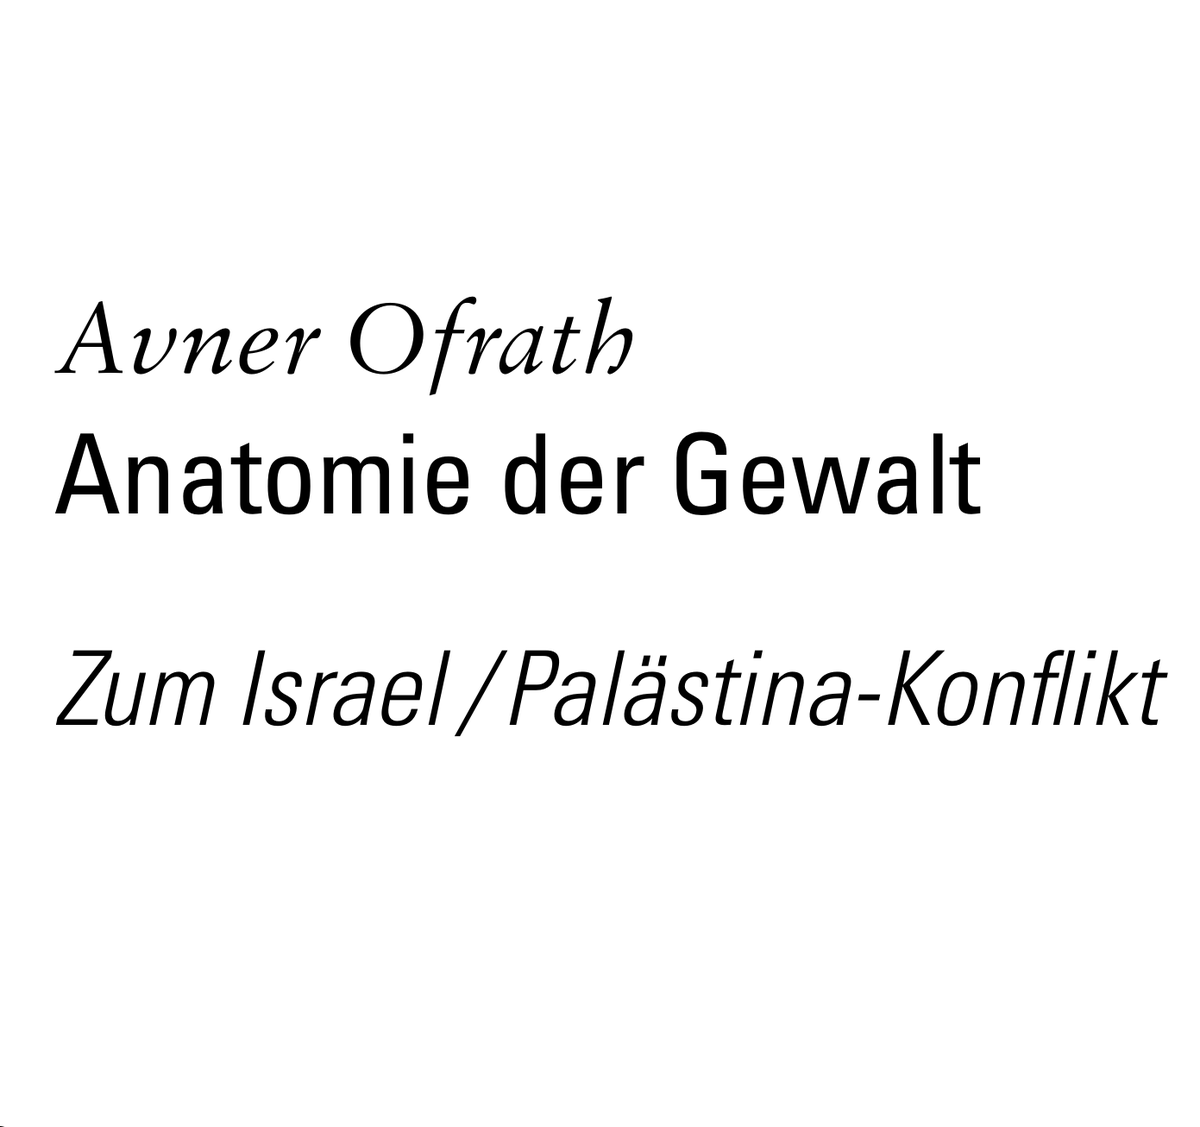 Der beste neuere Text zum Nahostkonflikt, den ich bisher gelesen habe: merkur-zeitschrift.de/artikel/anatom… 🧵